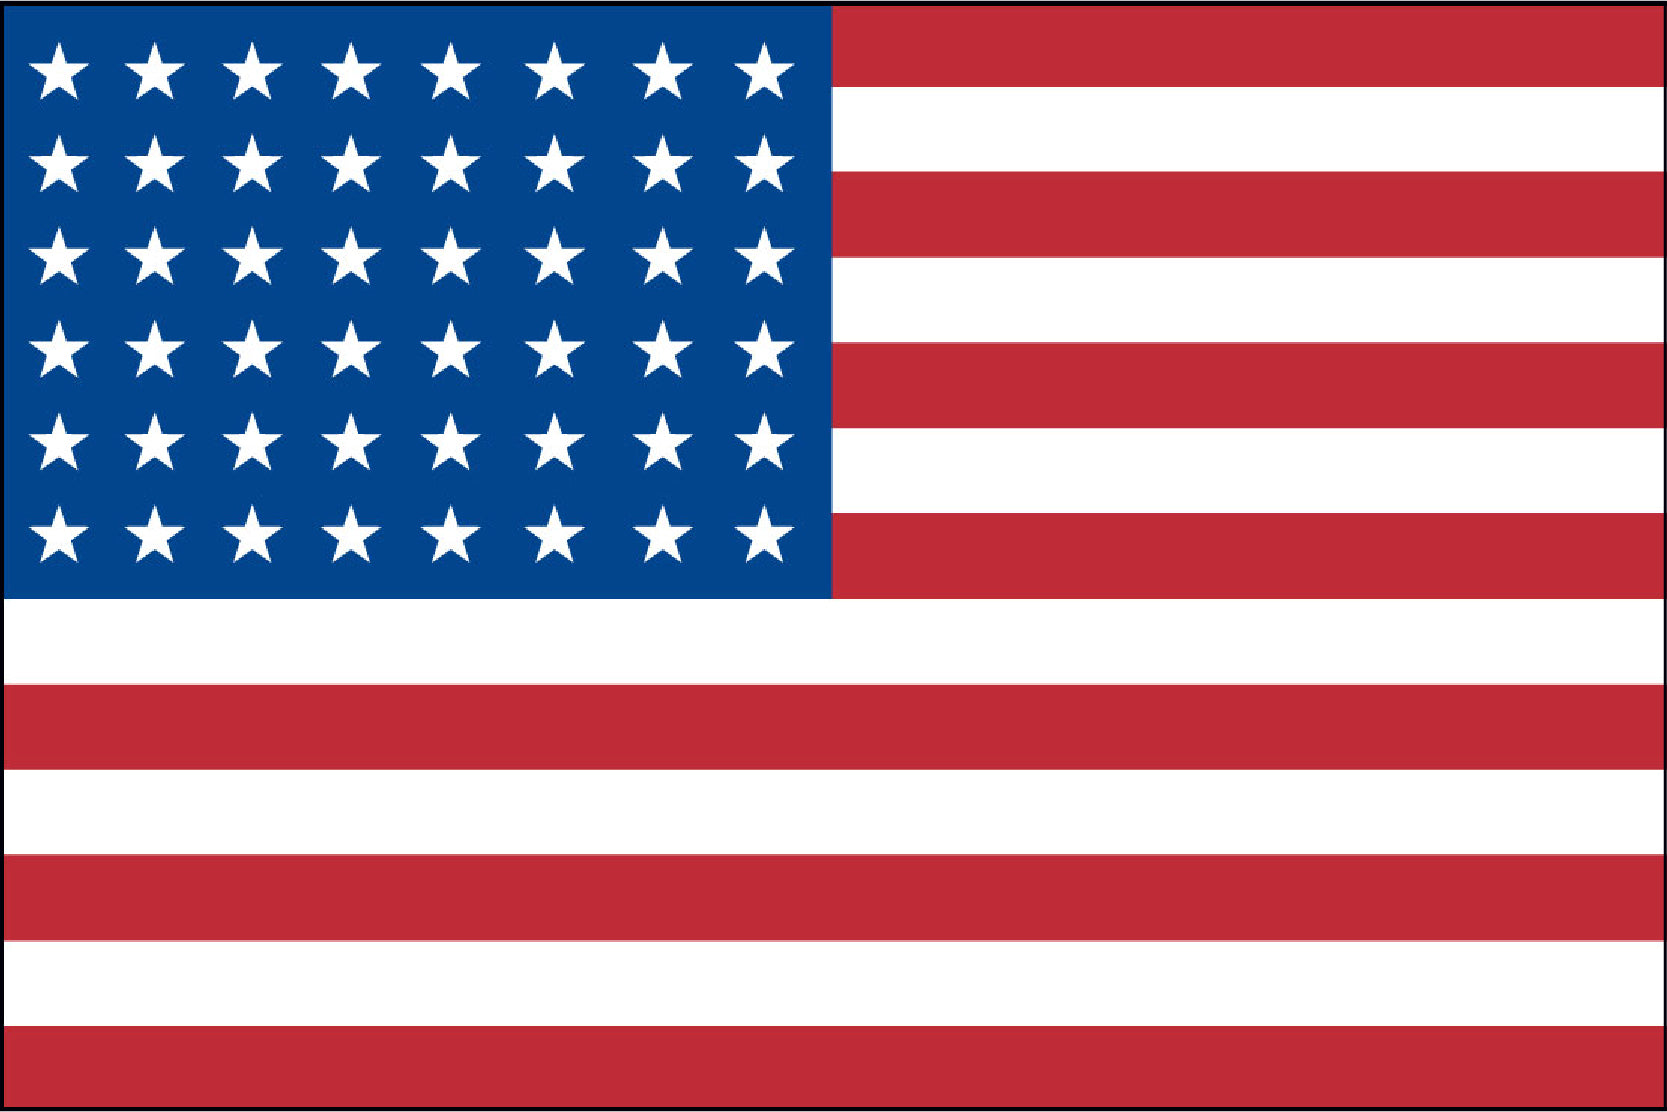 Iwo Jima (48-STAR) 3' x 5' Flag